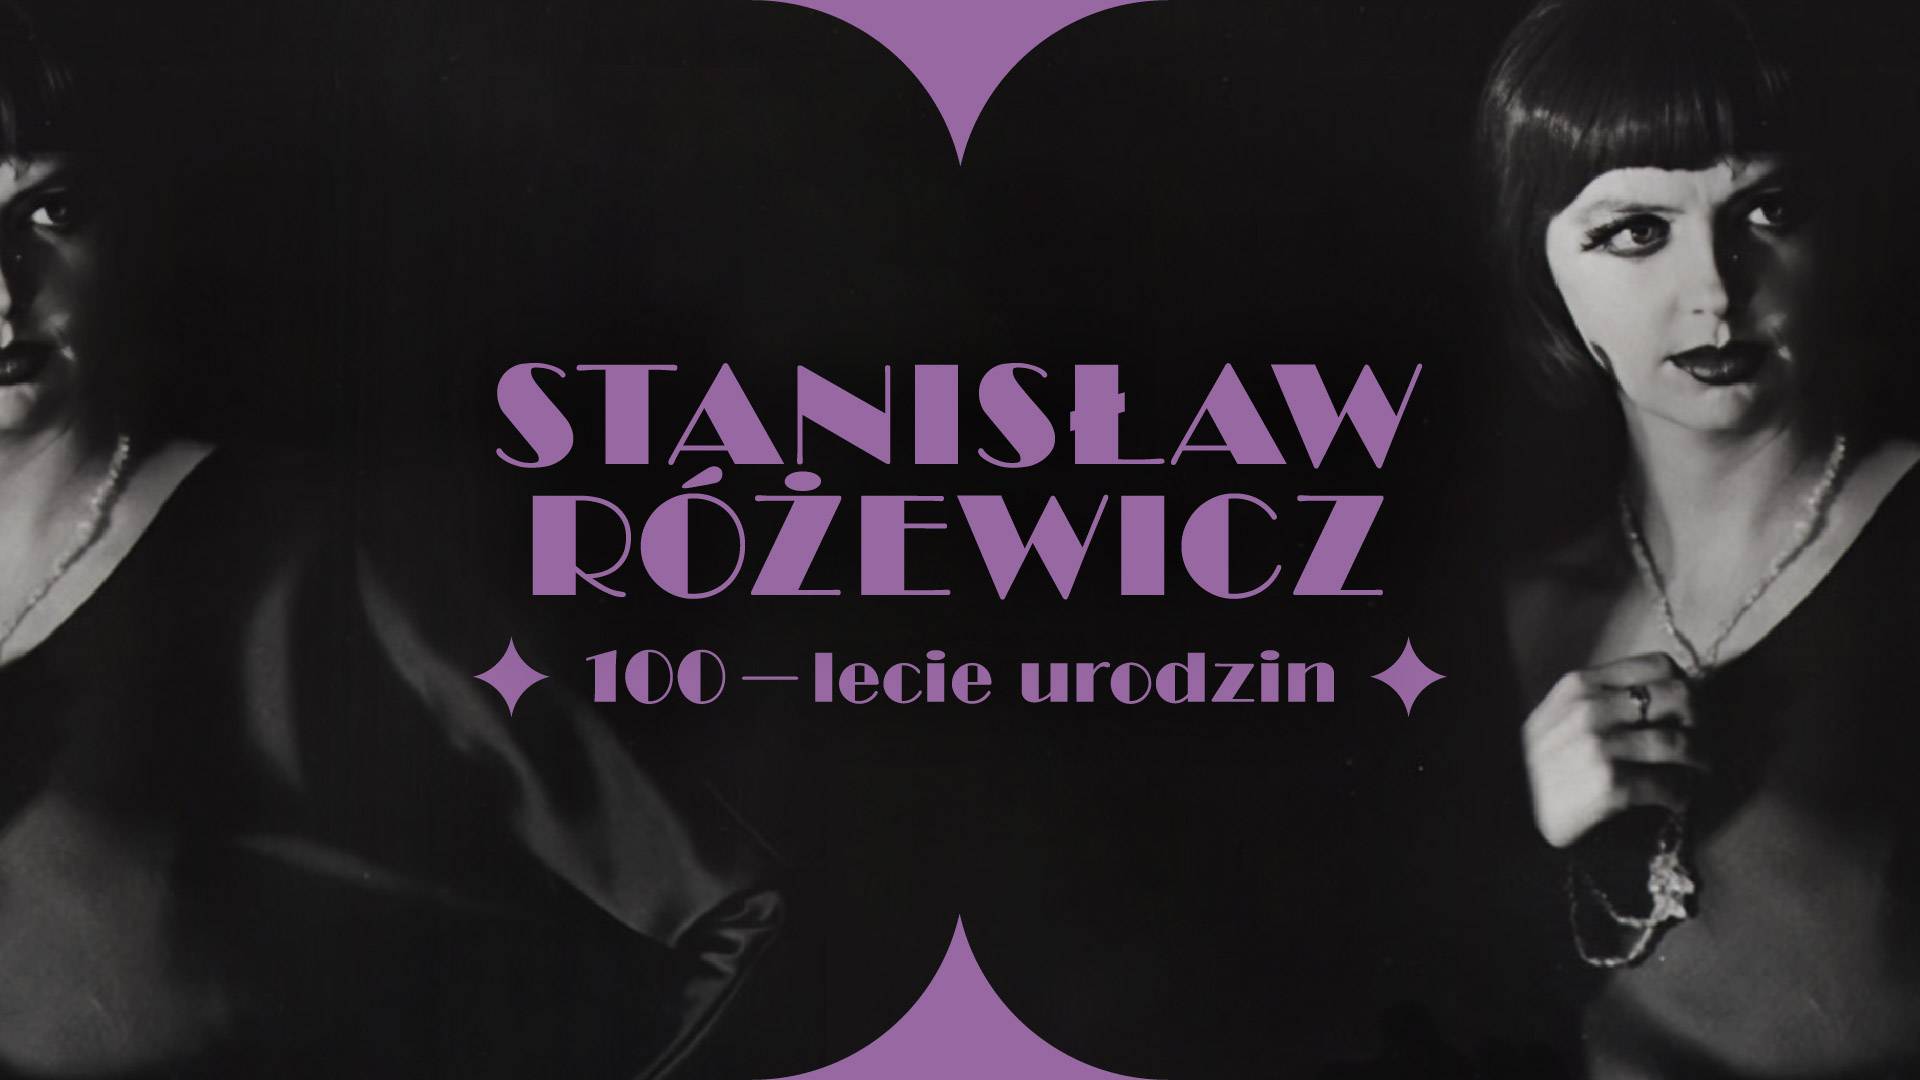 Stanisław Różewicz – retrospektywa twórczości na Timeless Film Festival Warsaw!